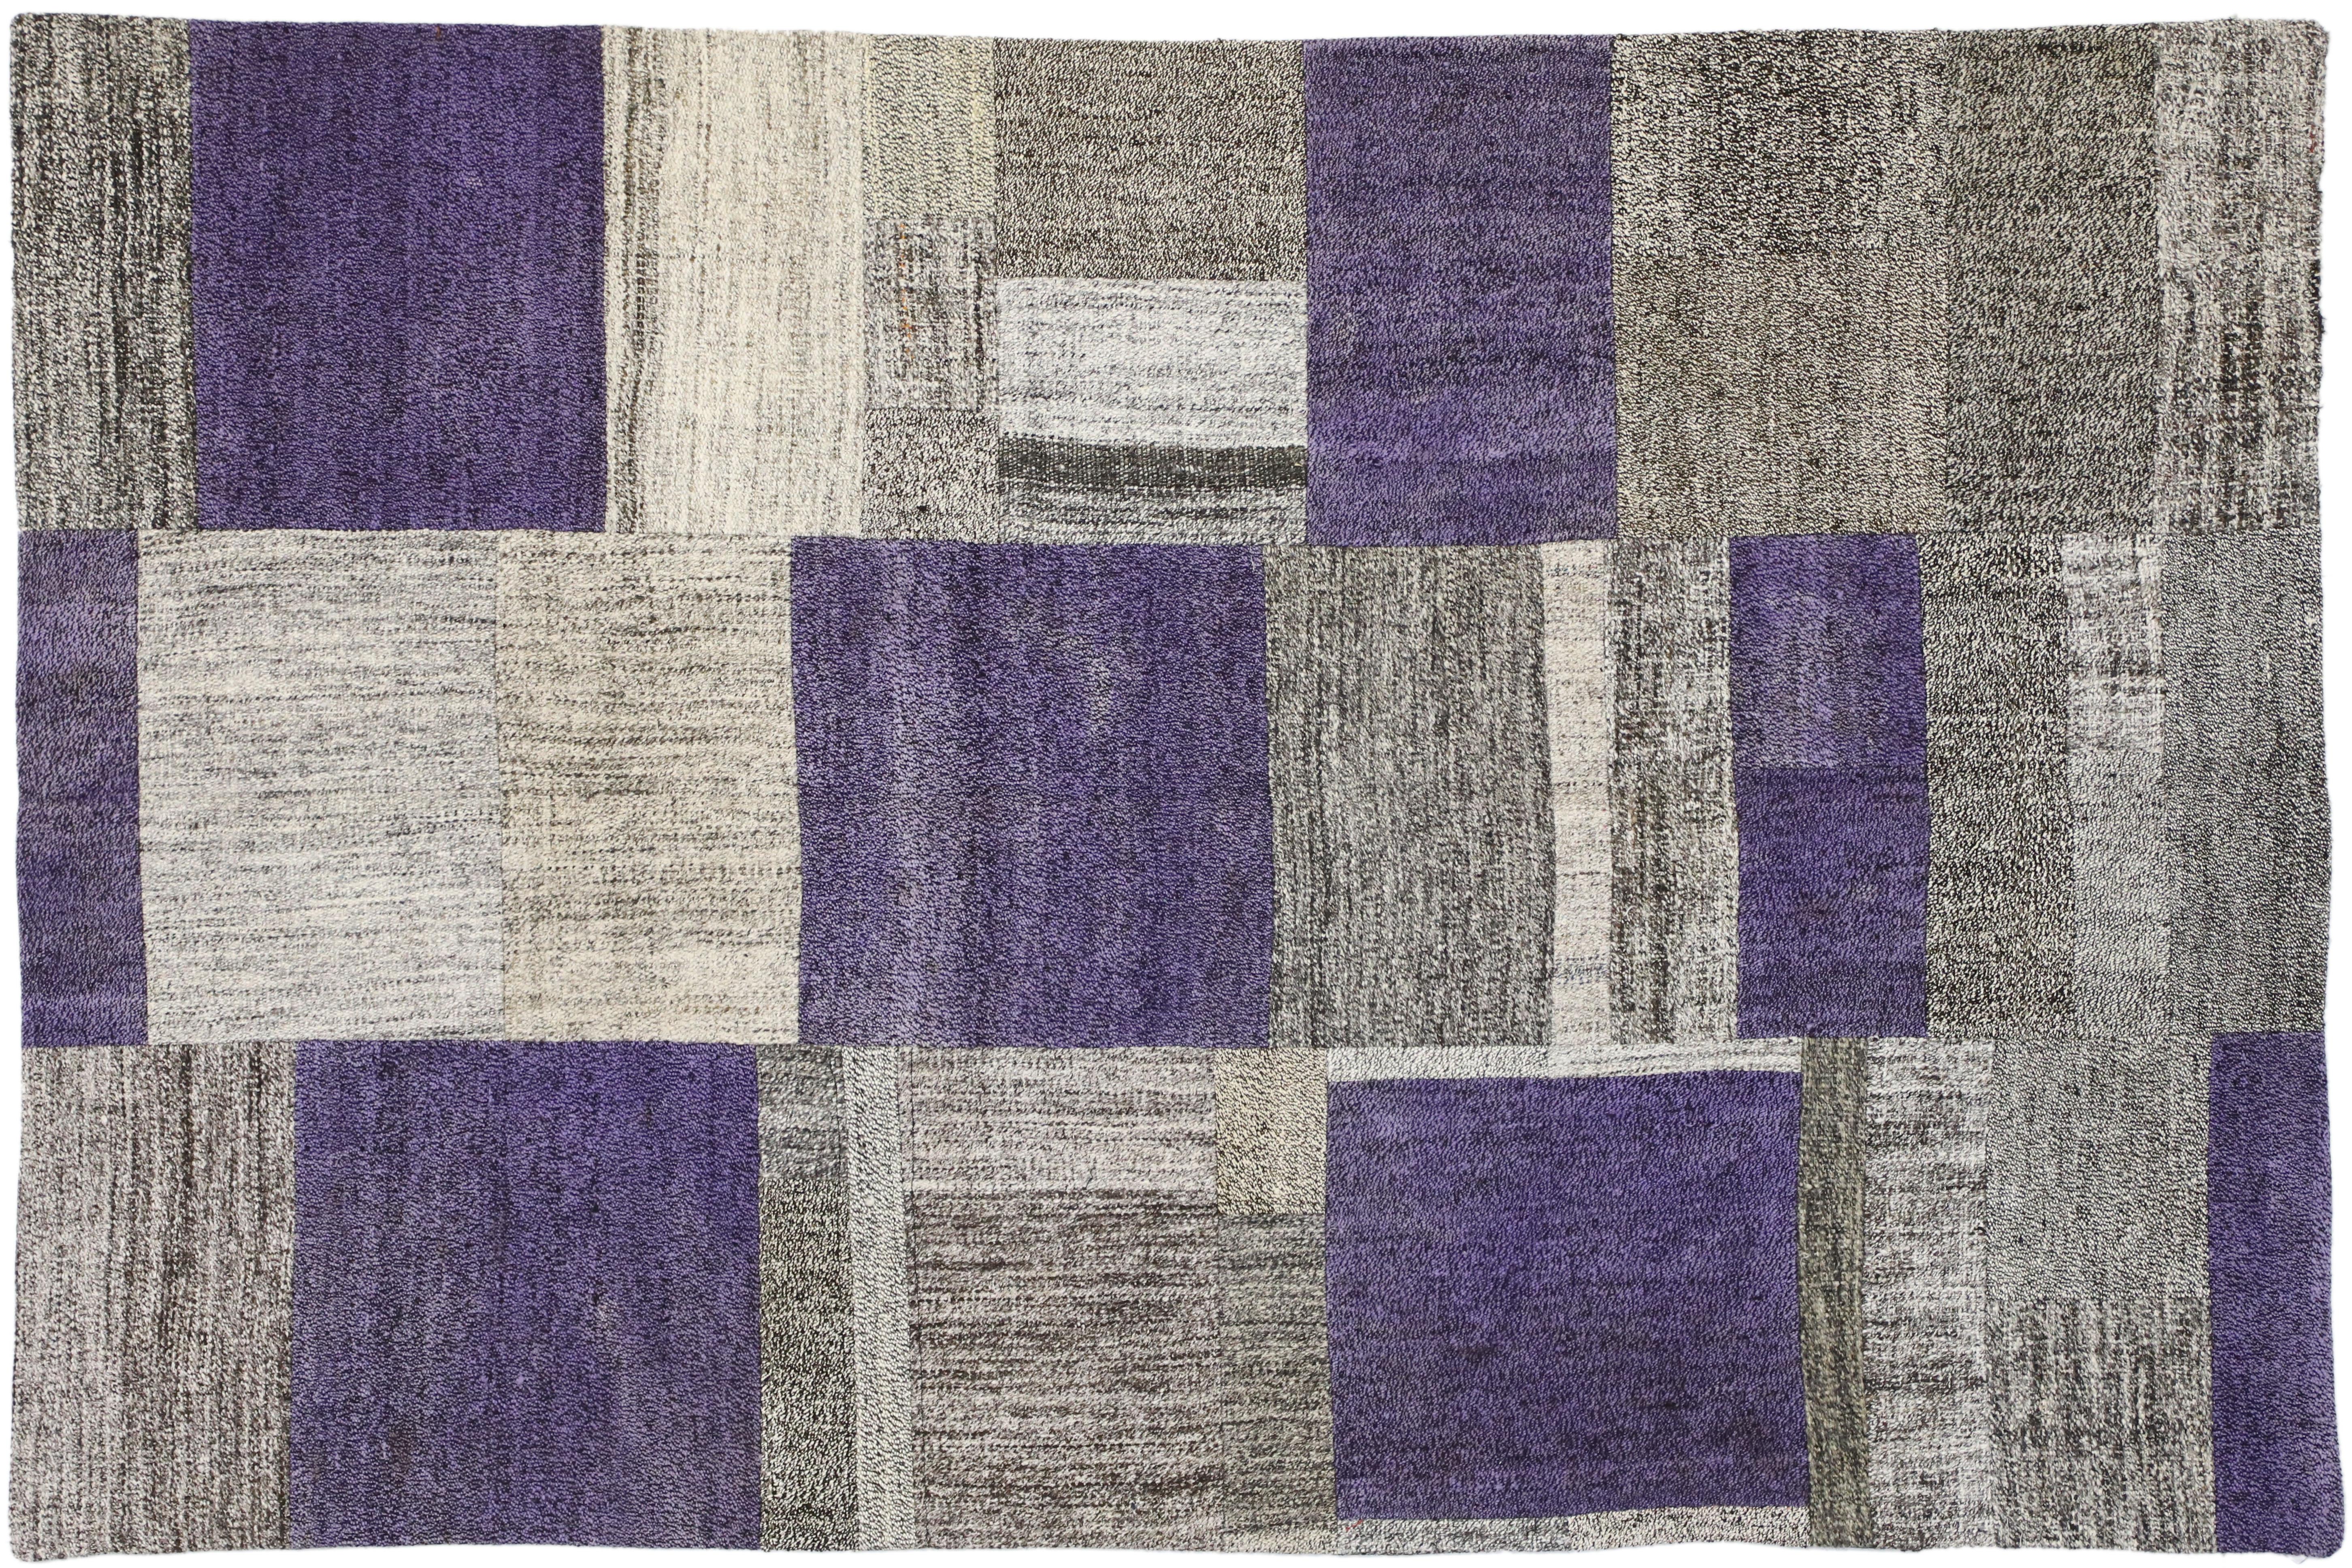 51583, tapis turc Pala Patchwork Kilim. Le mélange de divers motifs et couleurs crée un design étonnant dans ce tapis Pala Patchwork Kilim. Avec des bandes larges et étroites dans des couleurs amusantes, les rayures sont un motif classique. Rendu